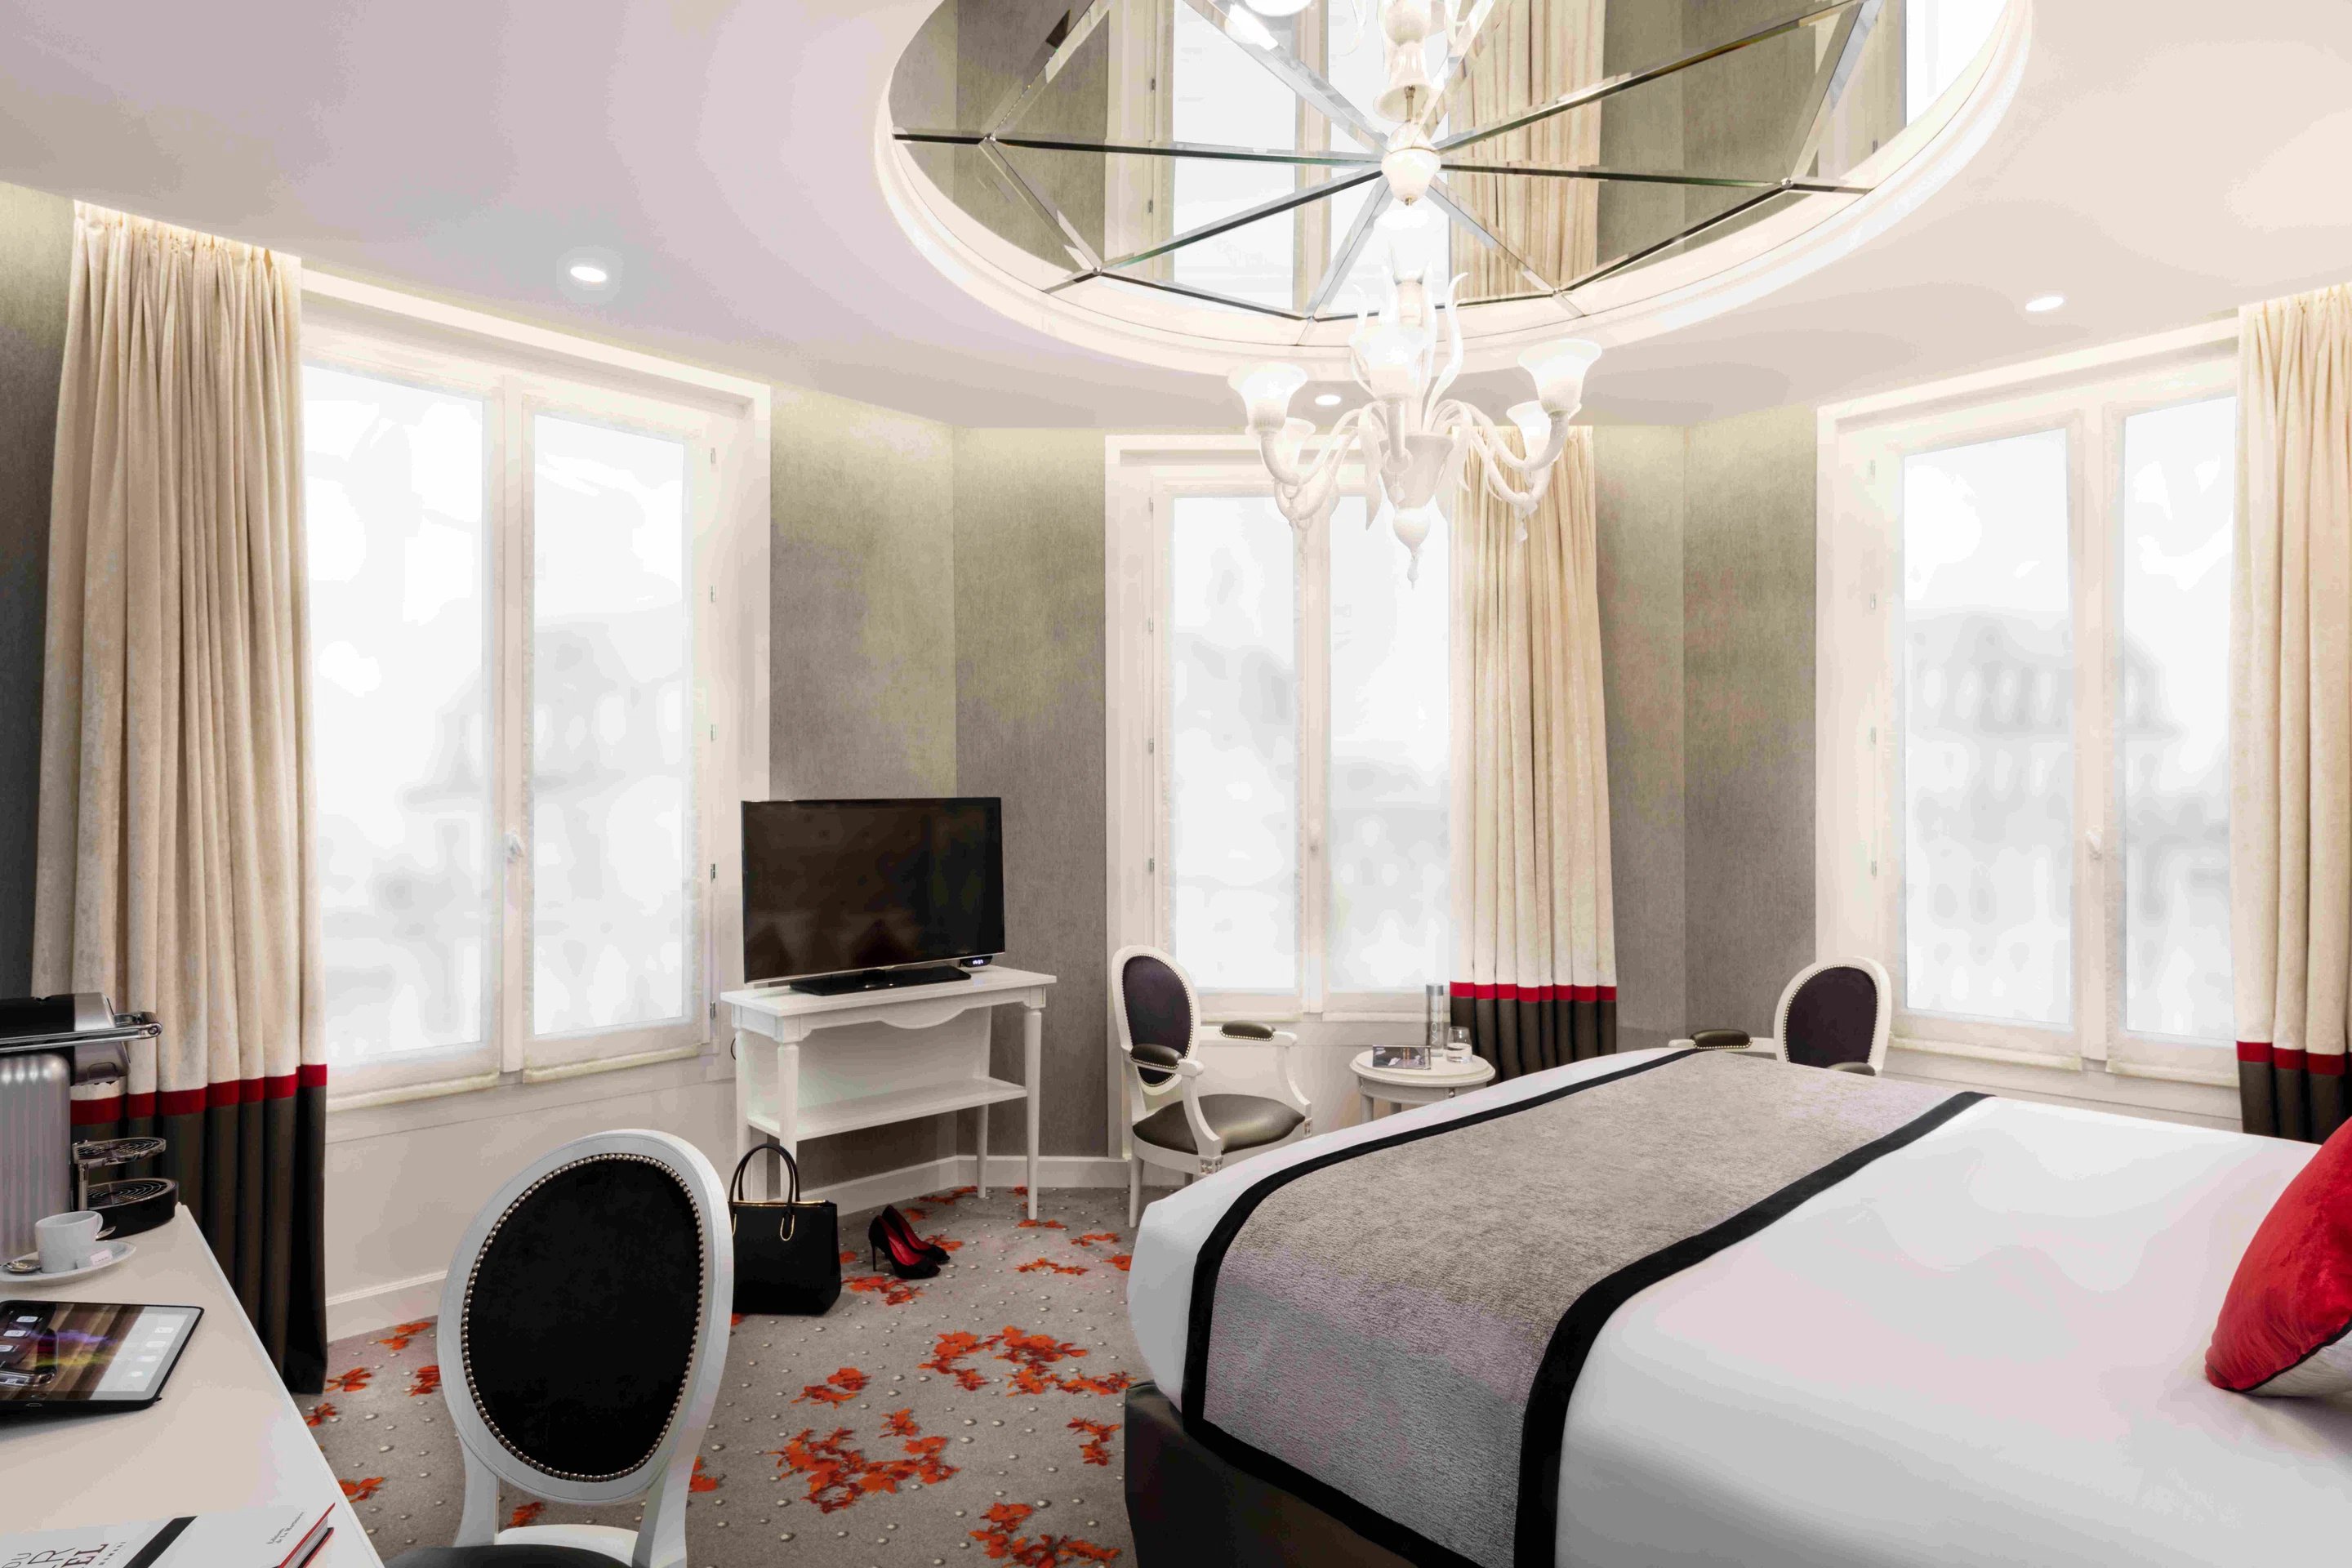 Maison Albar Hotels Le Diamond | Hôtel balcon avec vue Paris﻿